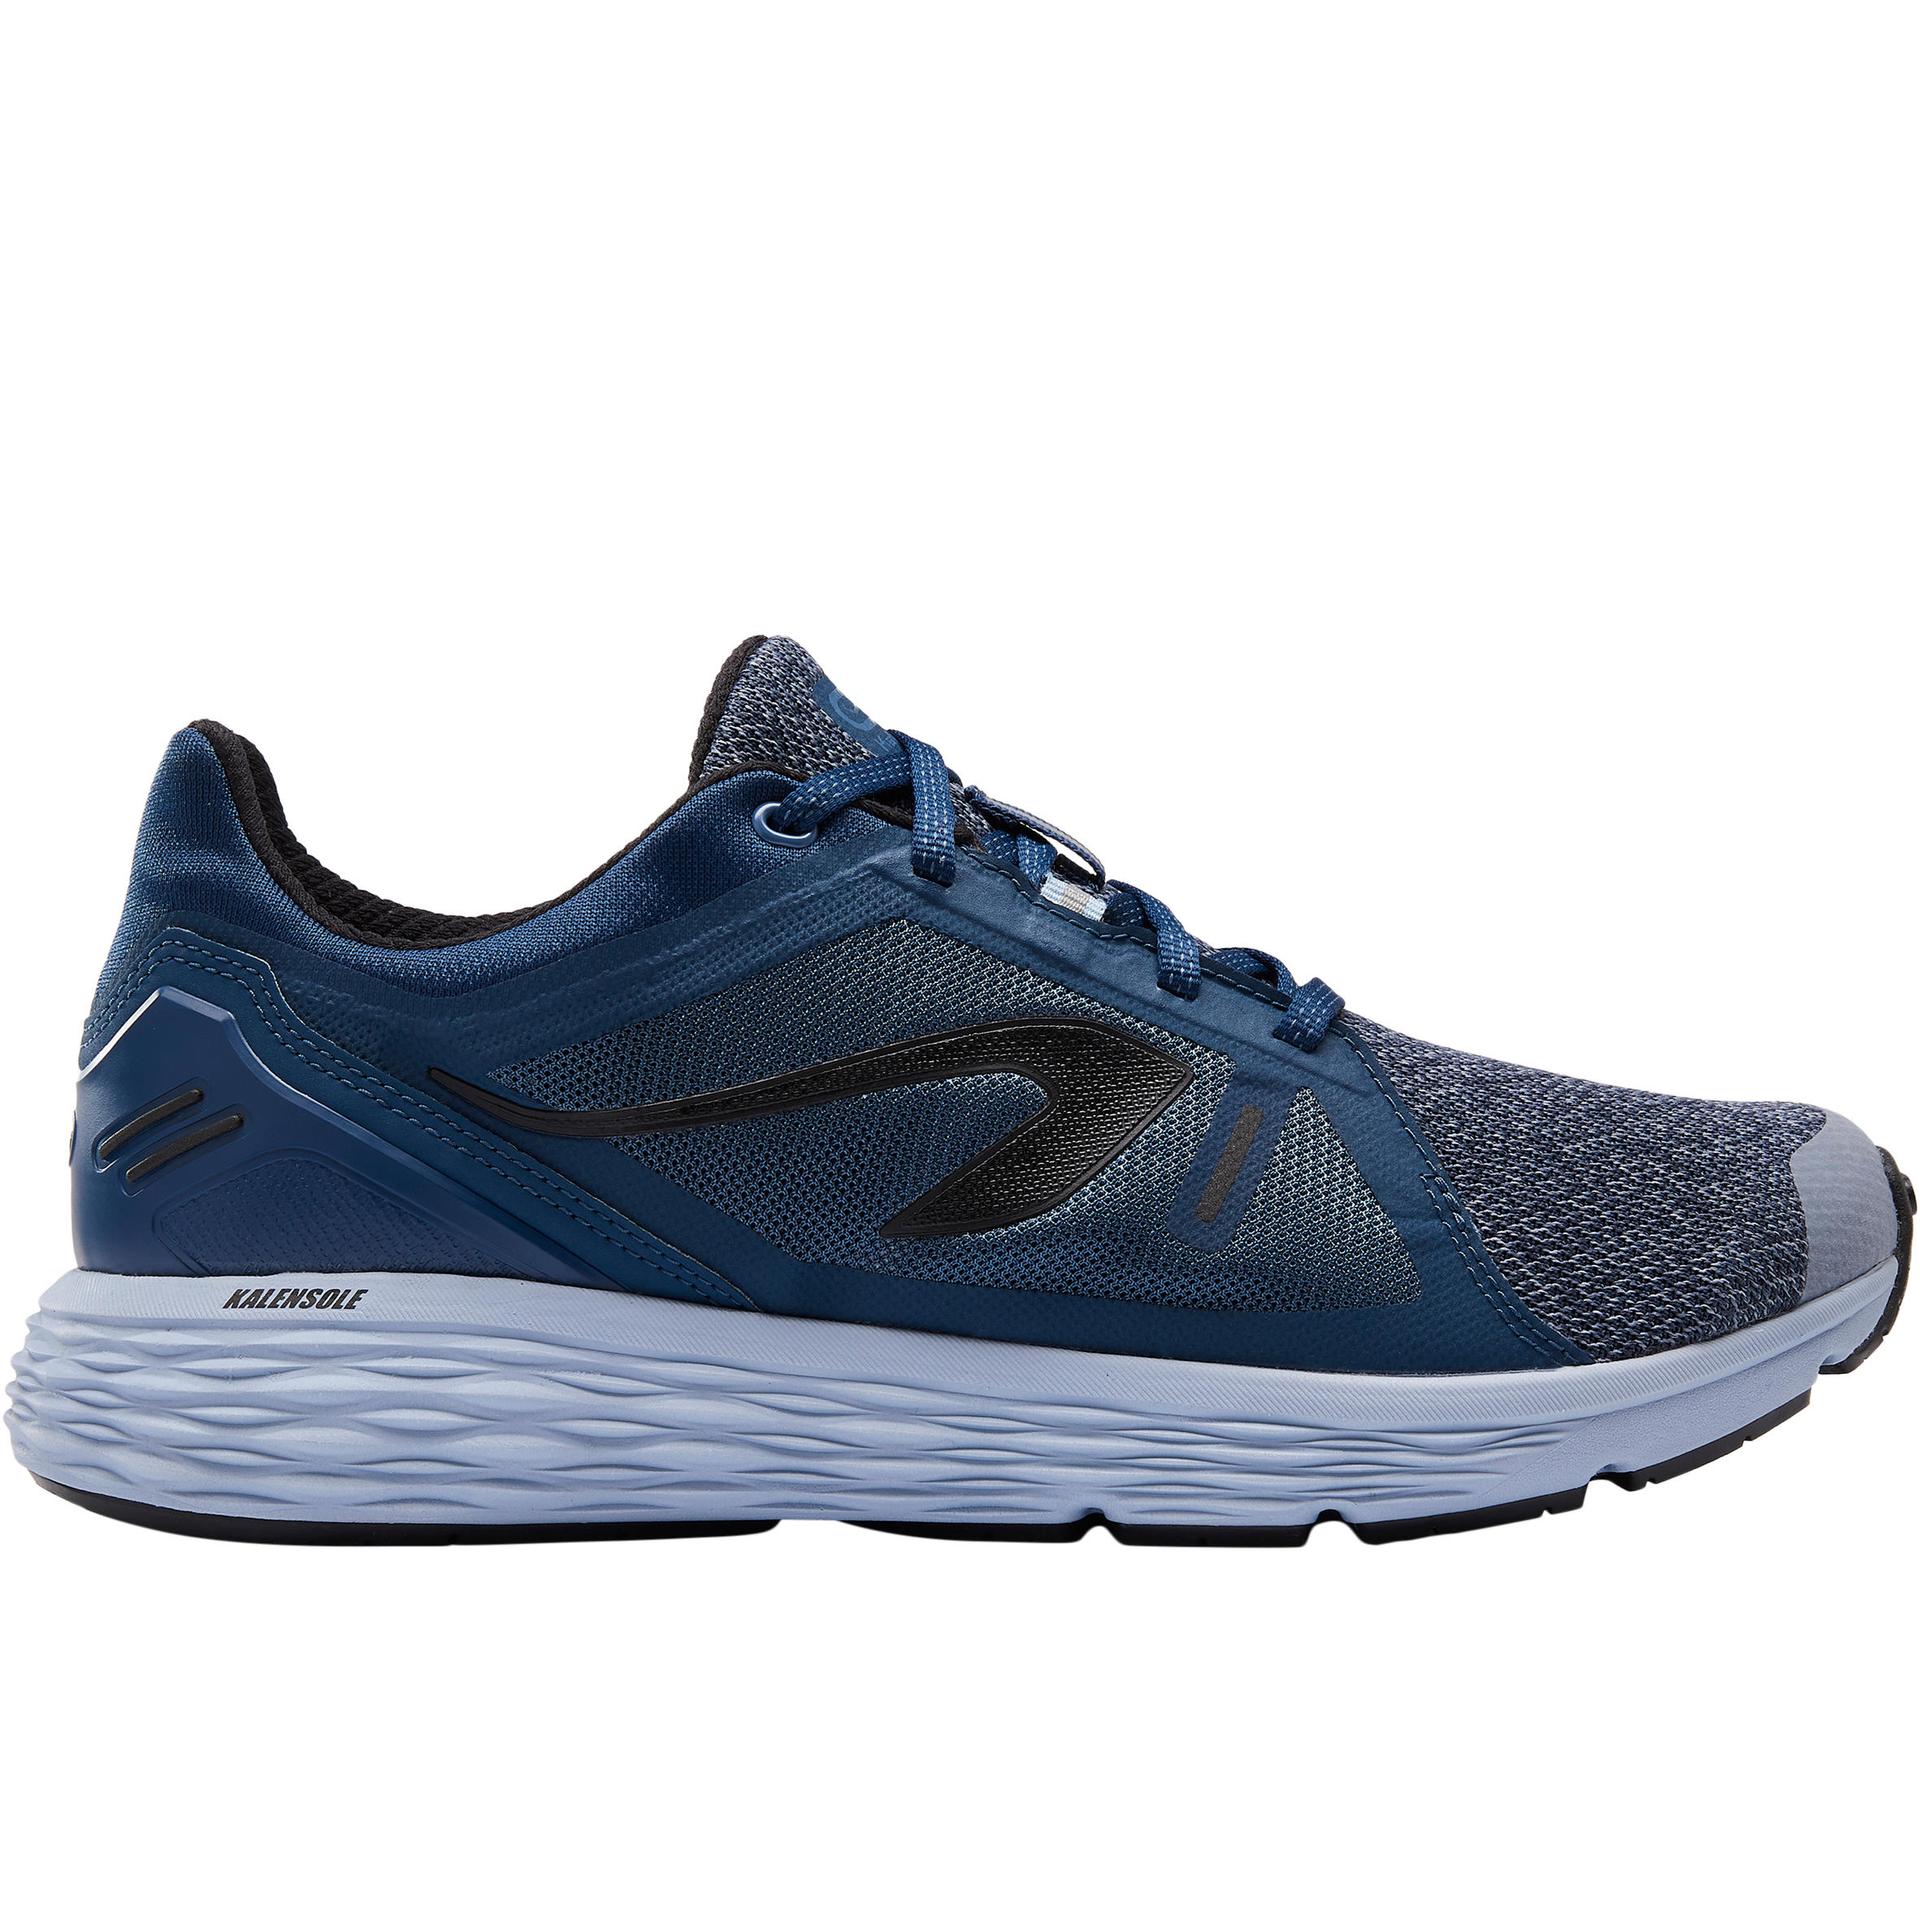 men's running shoes run comfort - blue